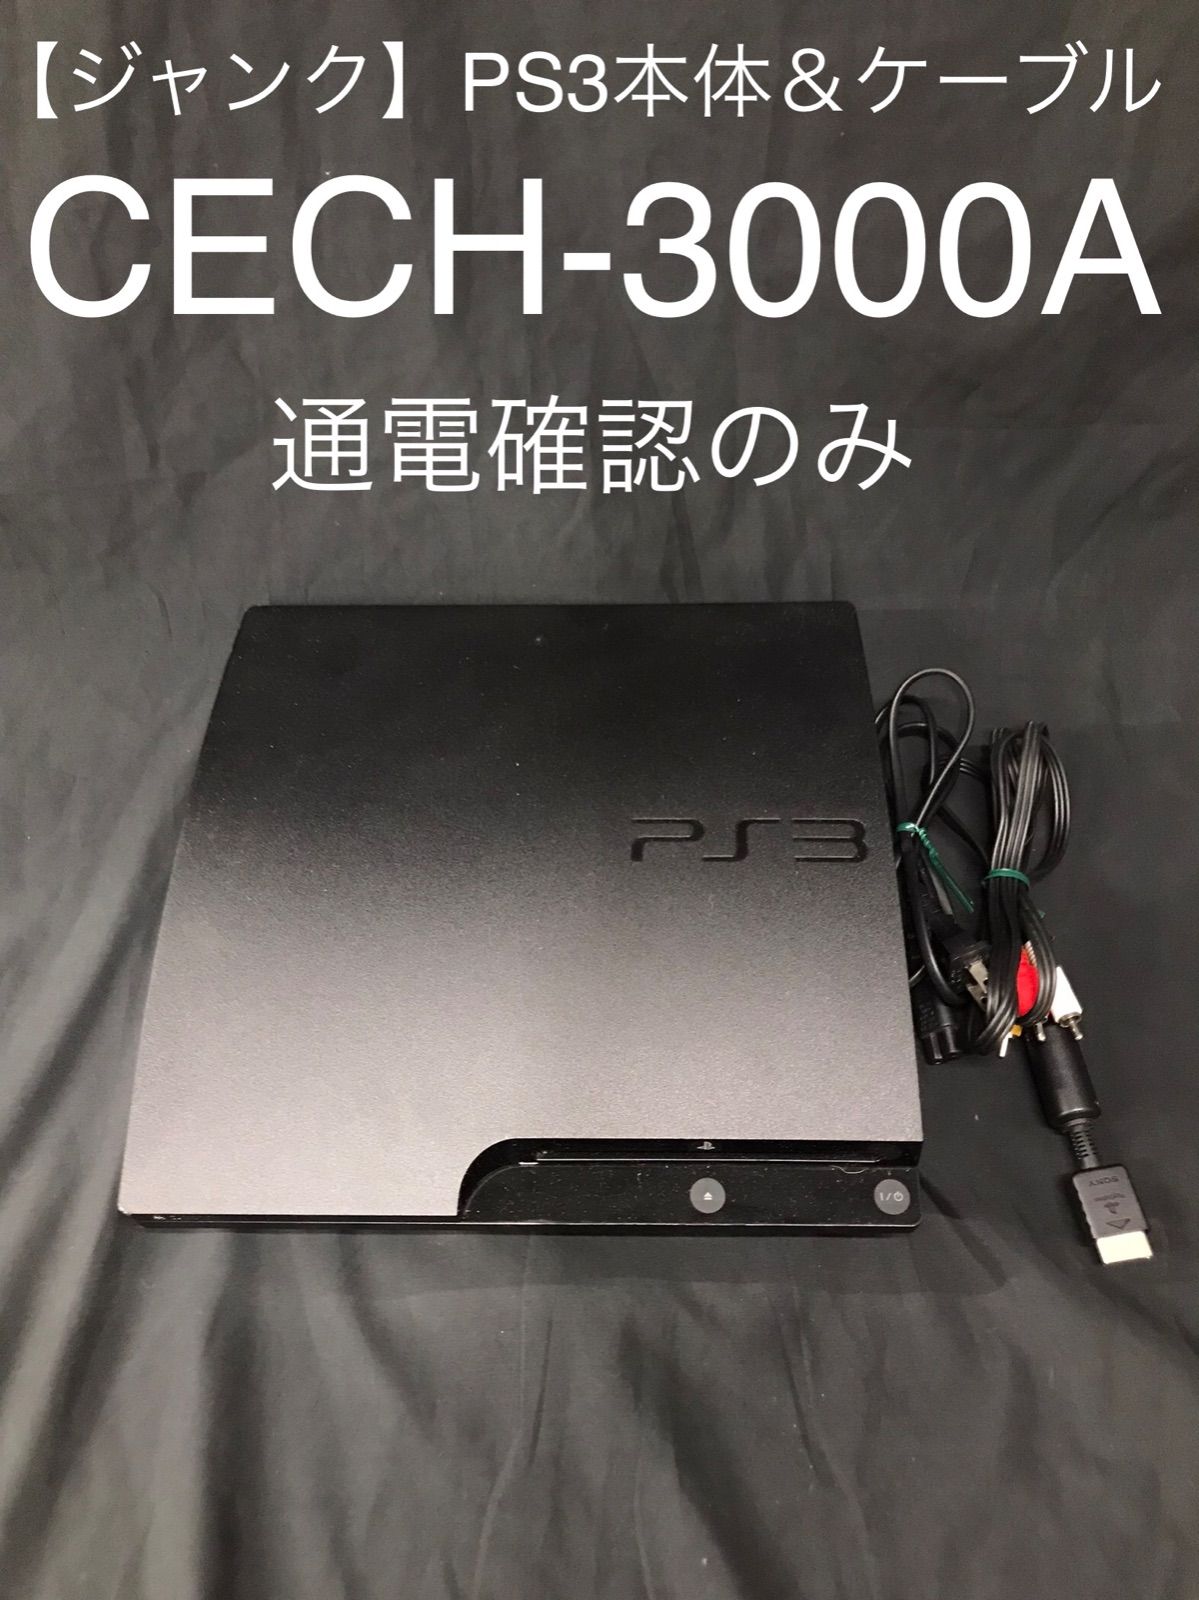 PS3 CECH-3000A